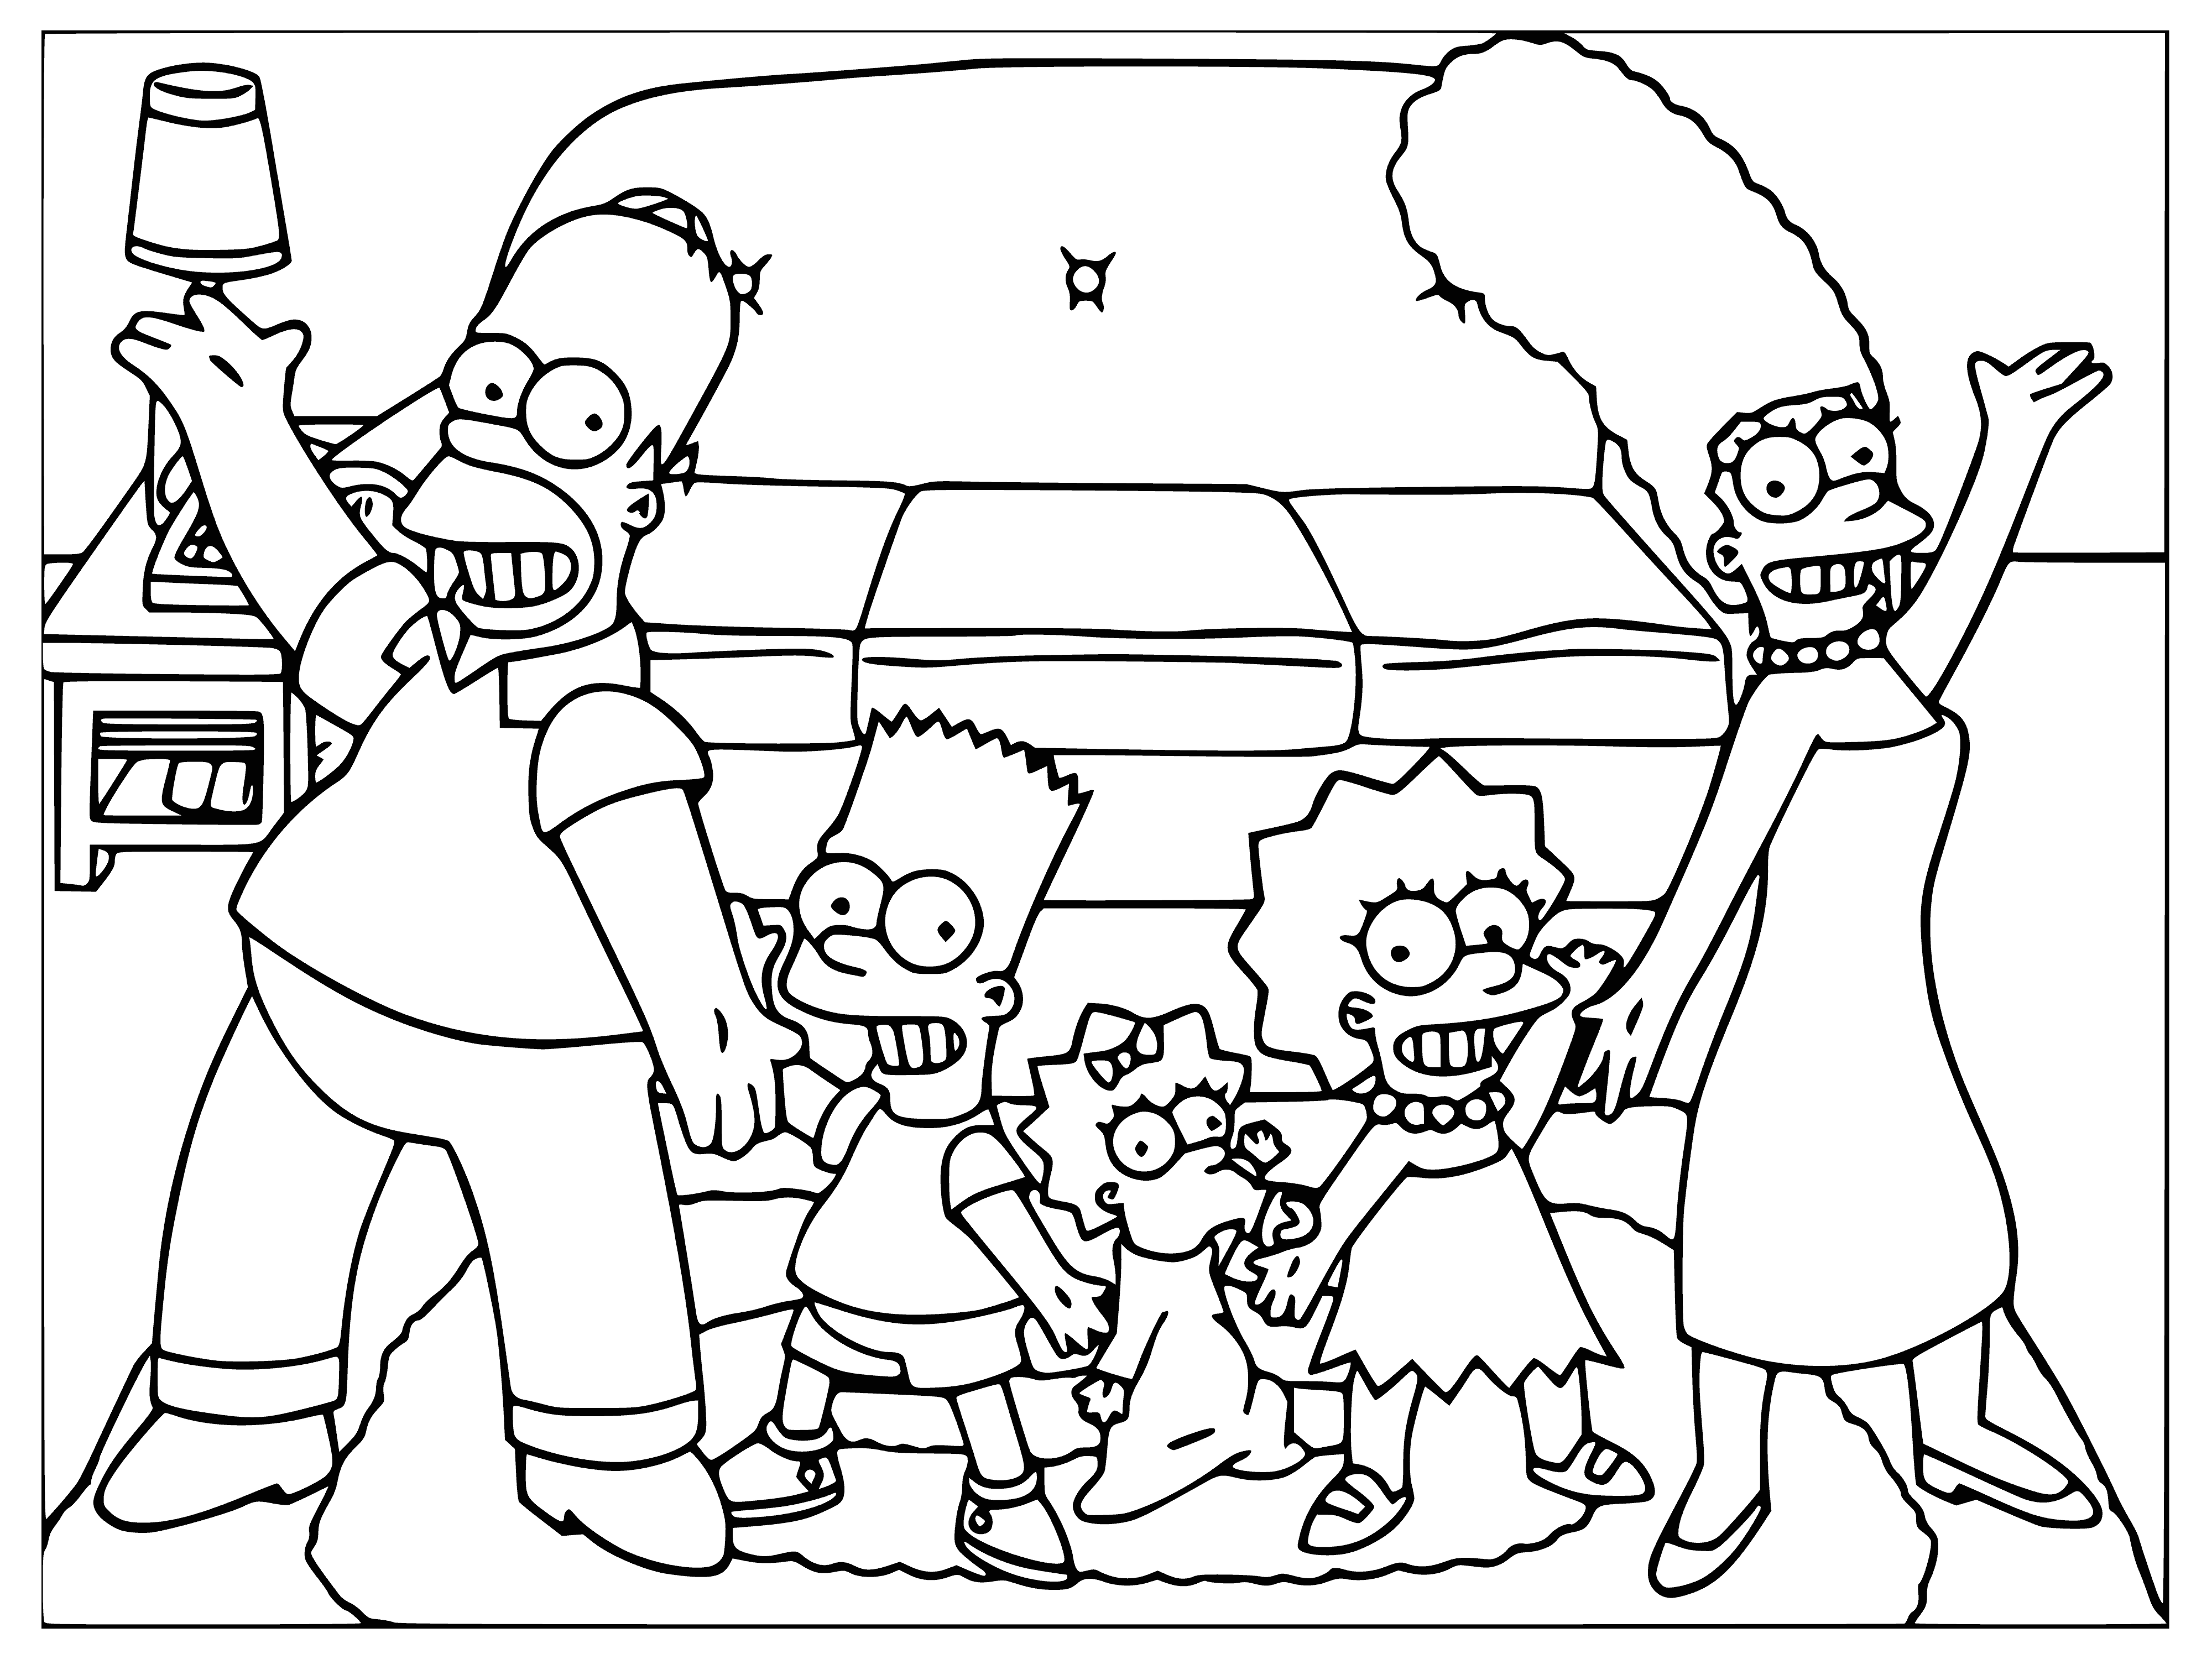 La famille Simpson coloriage